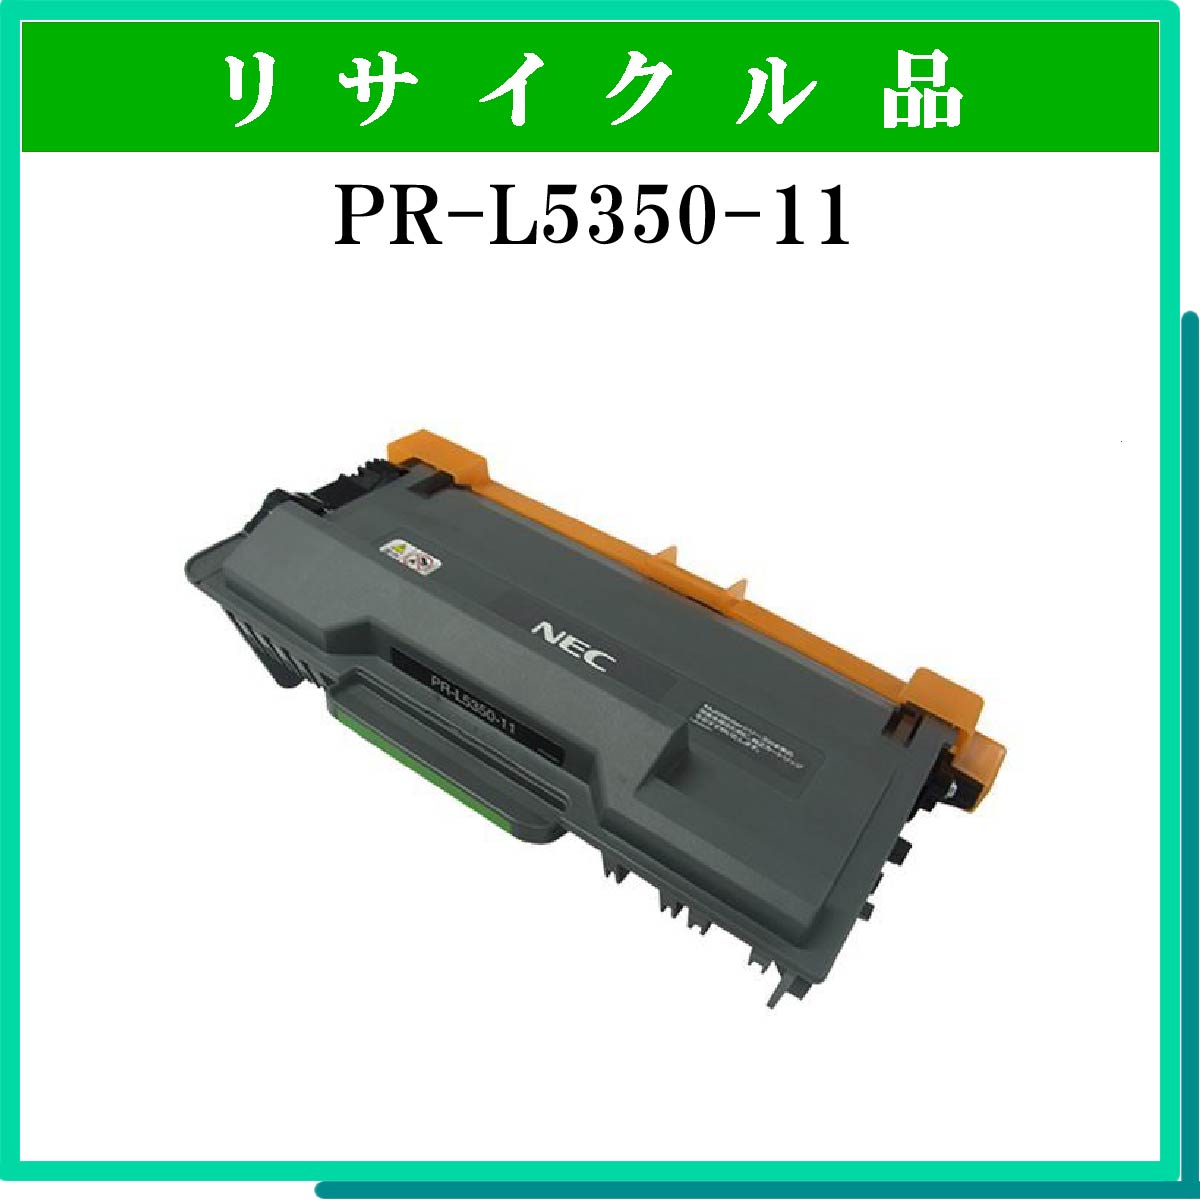 PR-L5350-11